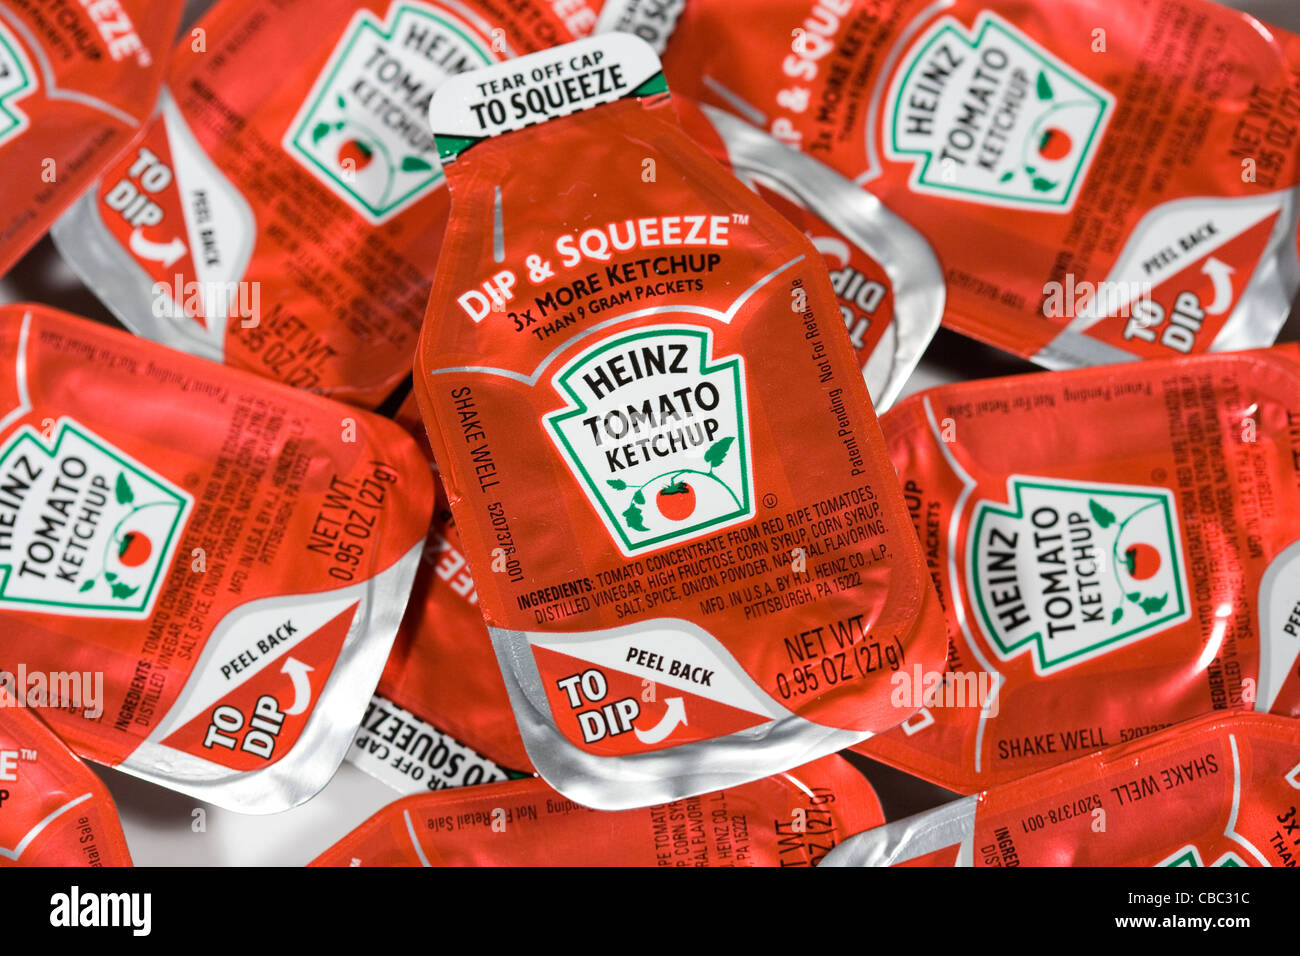 El nuevo estilo de los paquetes de Ketchup Heinz. Foto de stock